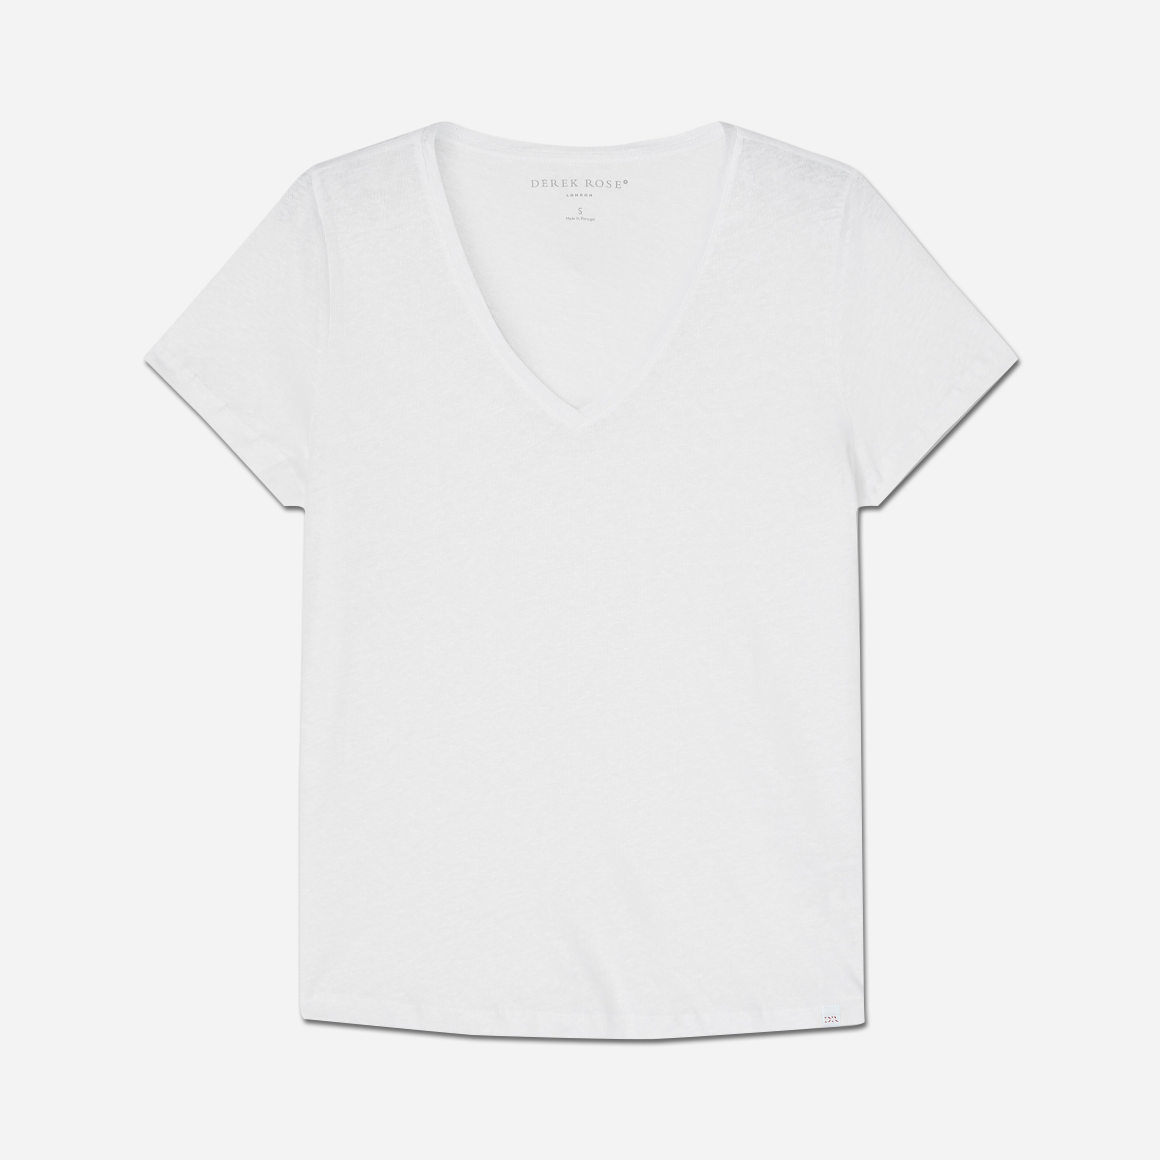 Derek Rose's Jordan Linen V-Neck T-shirt in white colorway. Shown against light grey background.